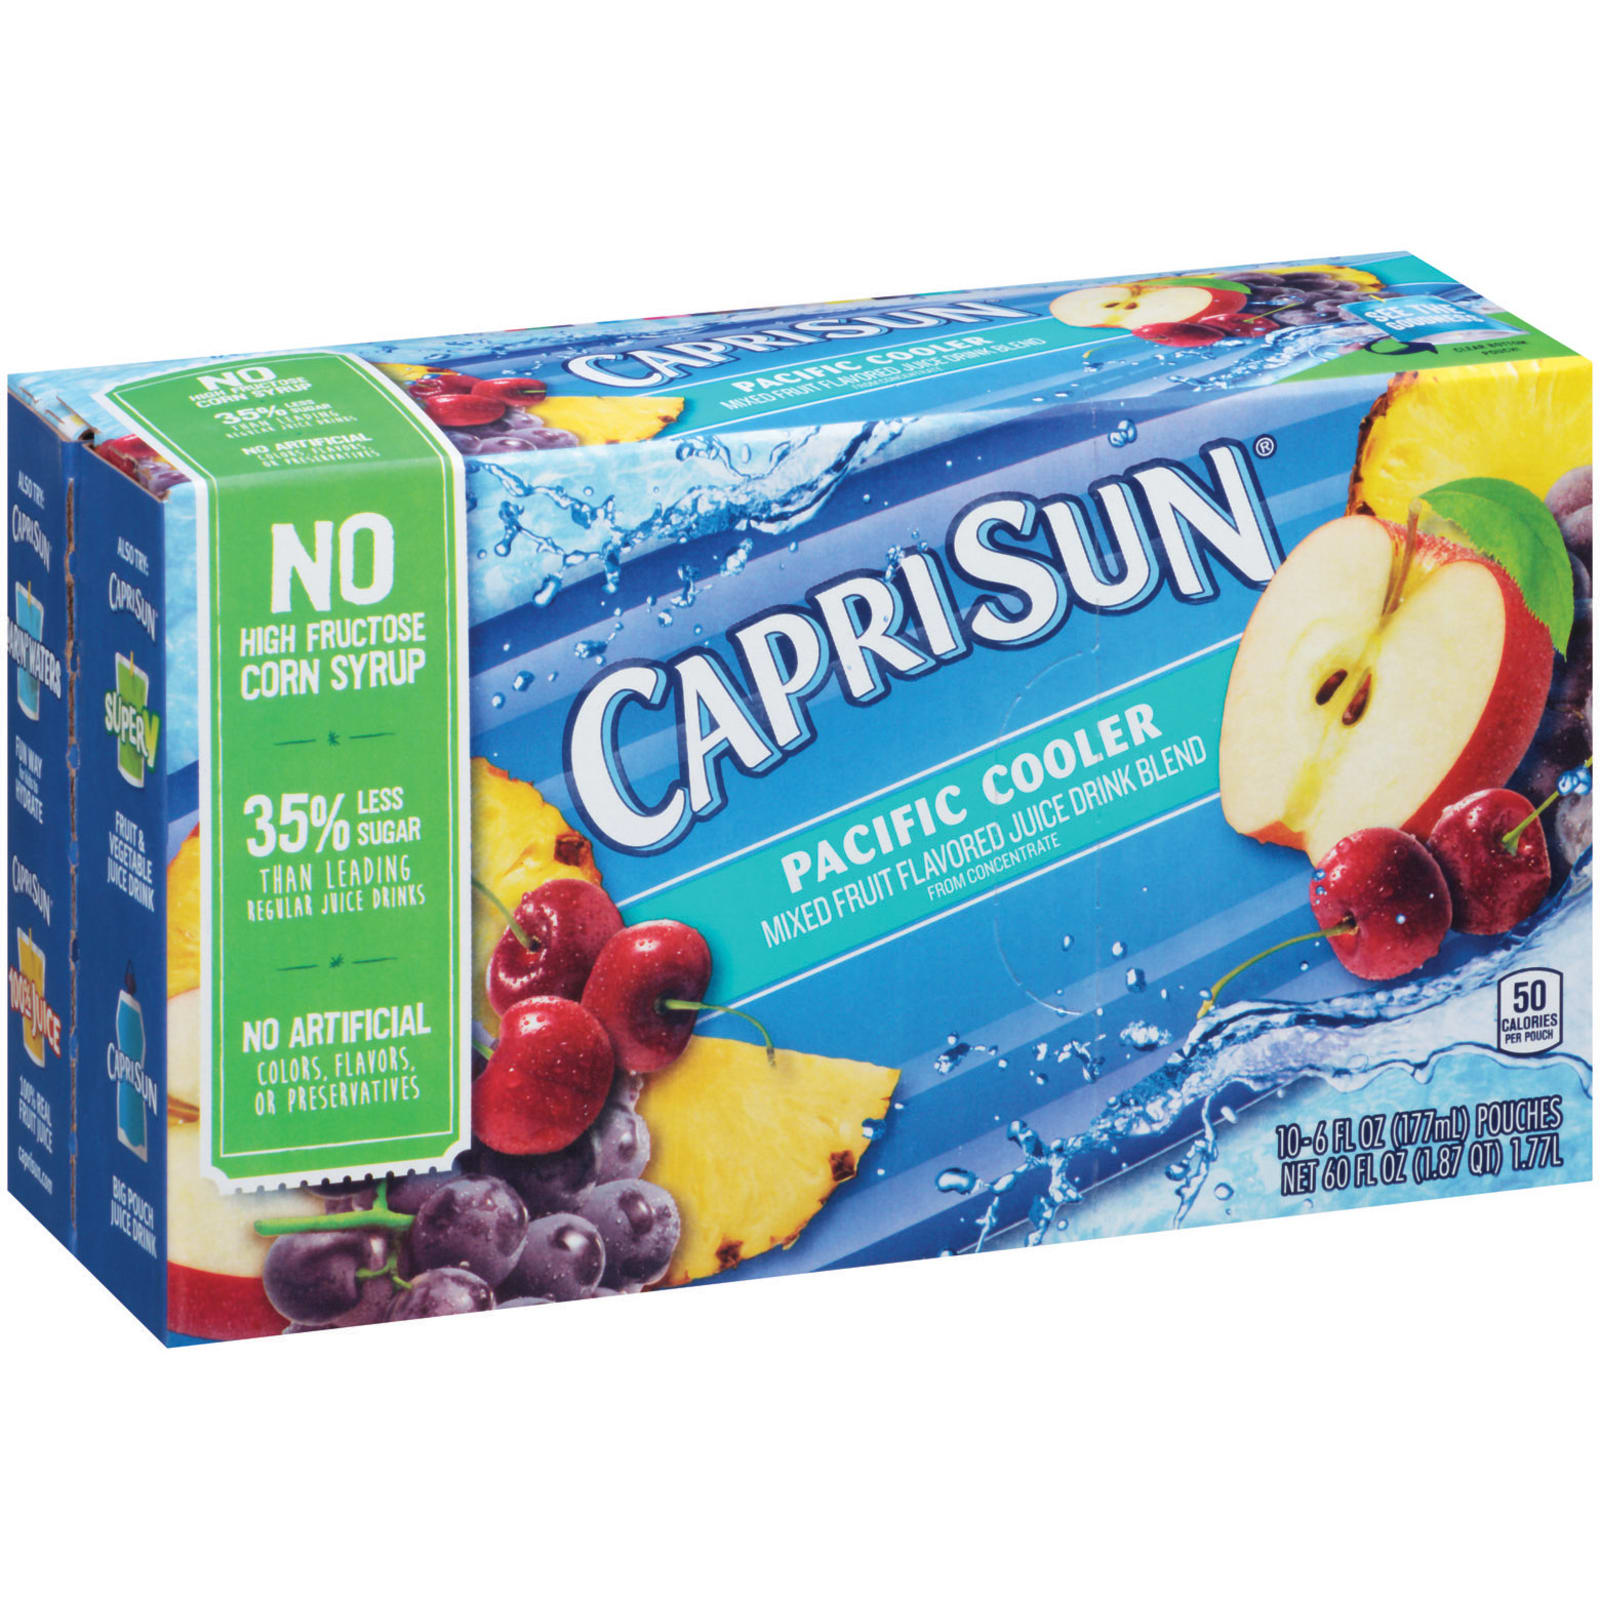 Capri Sun Pacific Cooler Mixed Fruit Flavored Juice Drink Blend Pouches -  10-6 Fl. Oz.